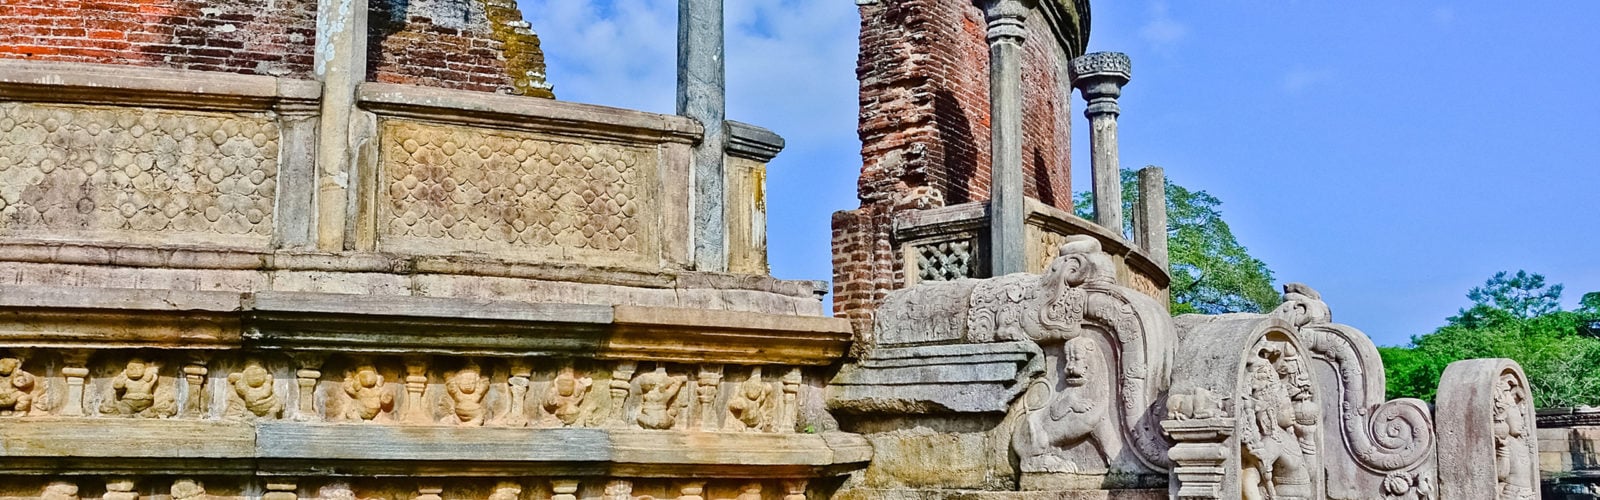 polonnaruwa-sri-lanka